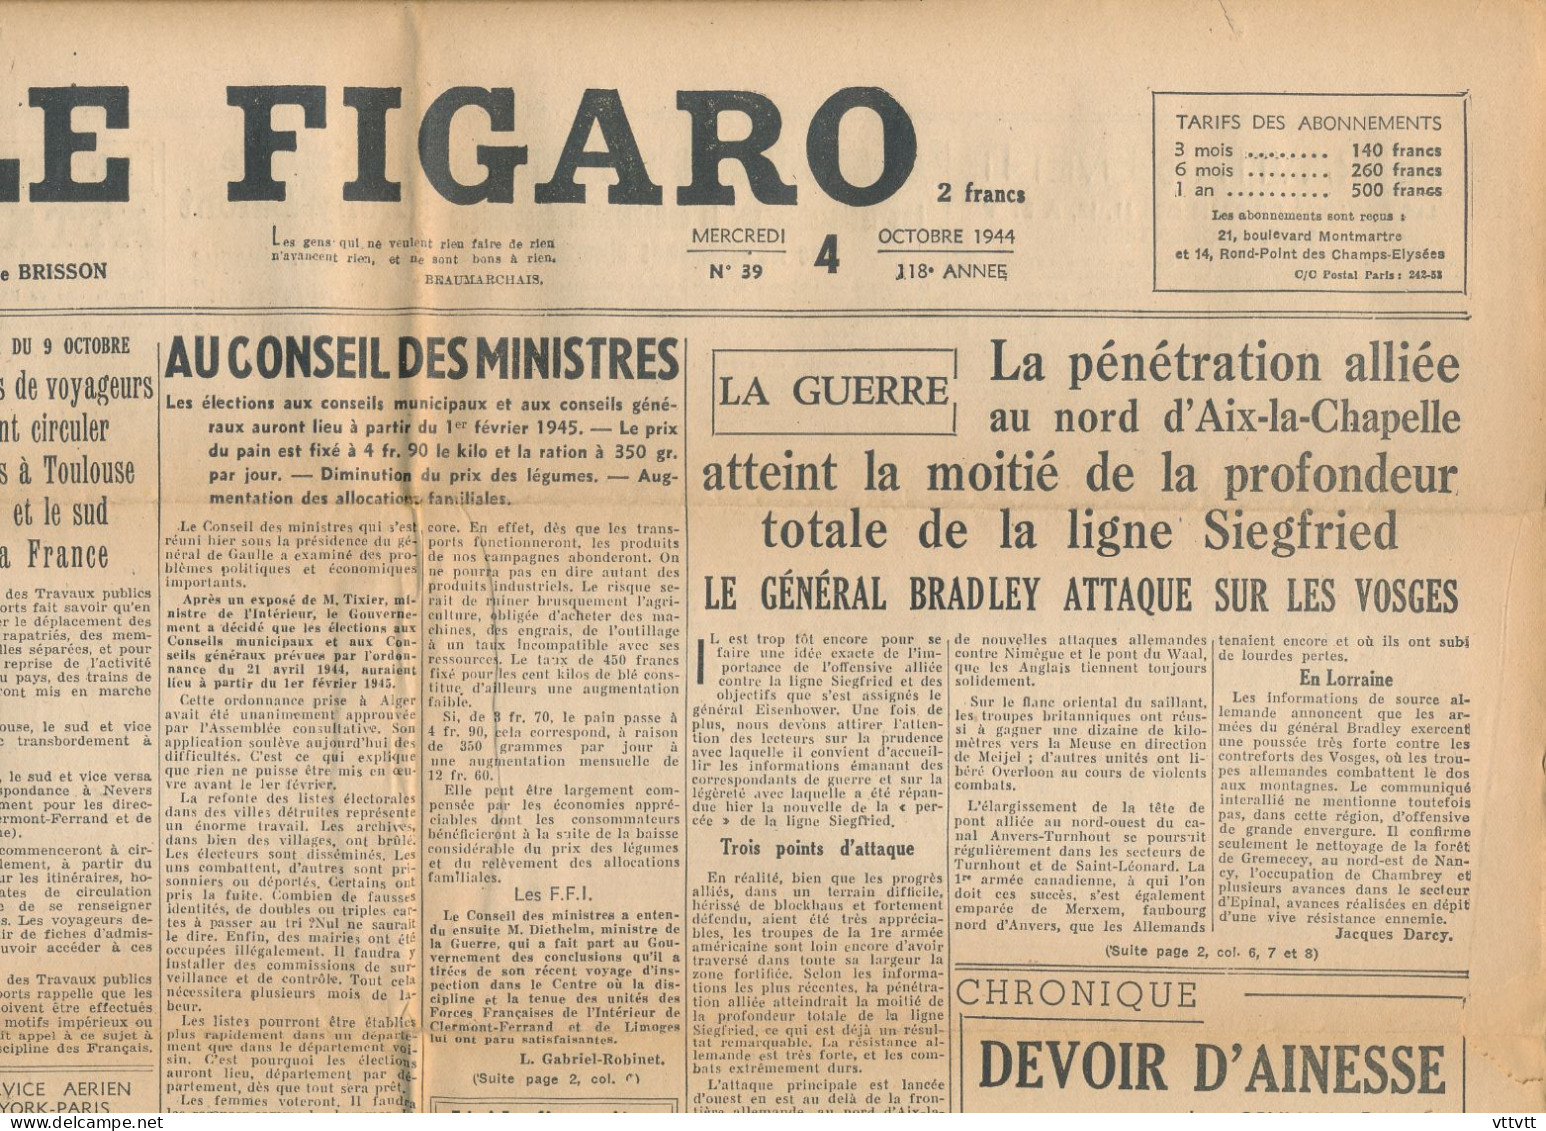 LE FIGARO, Mercredi 4 Octobre 1944, N° 39, Train Paris-Toulouse-Lyon, Guerre Aix-la-Chapelle, Conseil Des Ministres... - General Issues